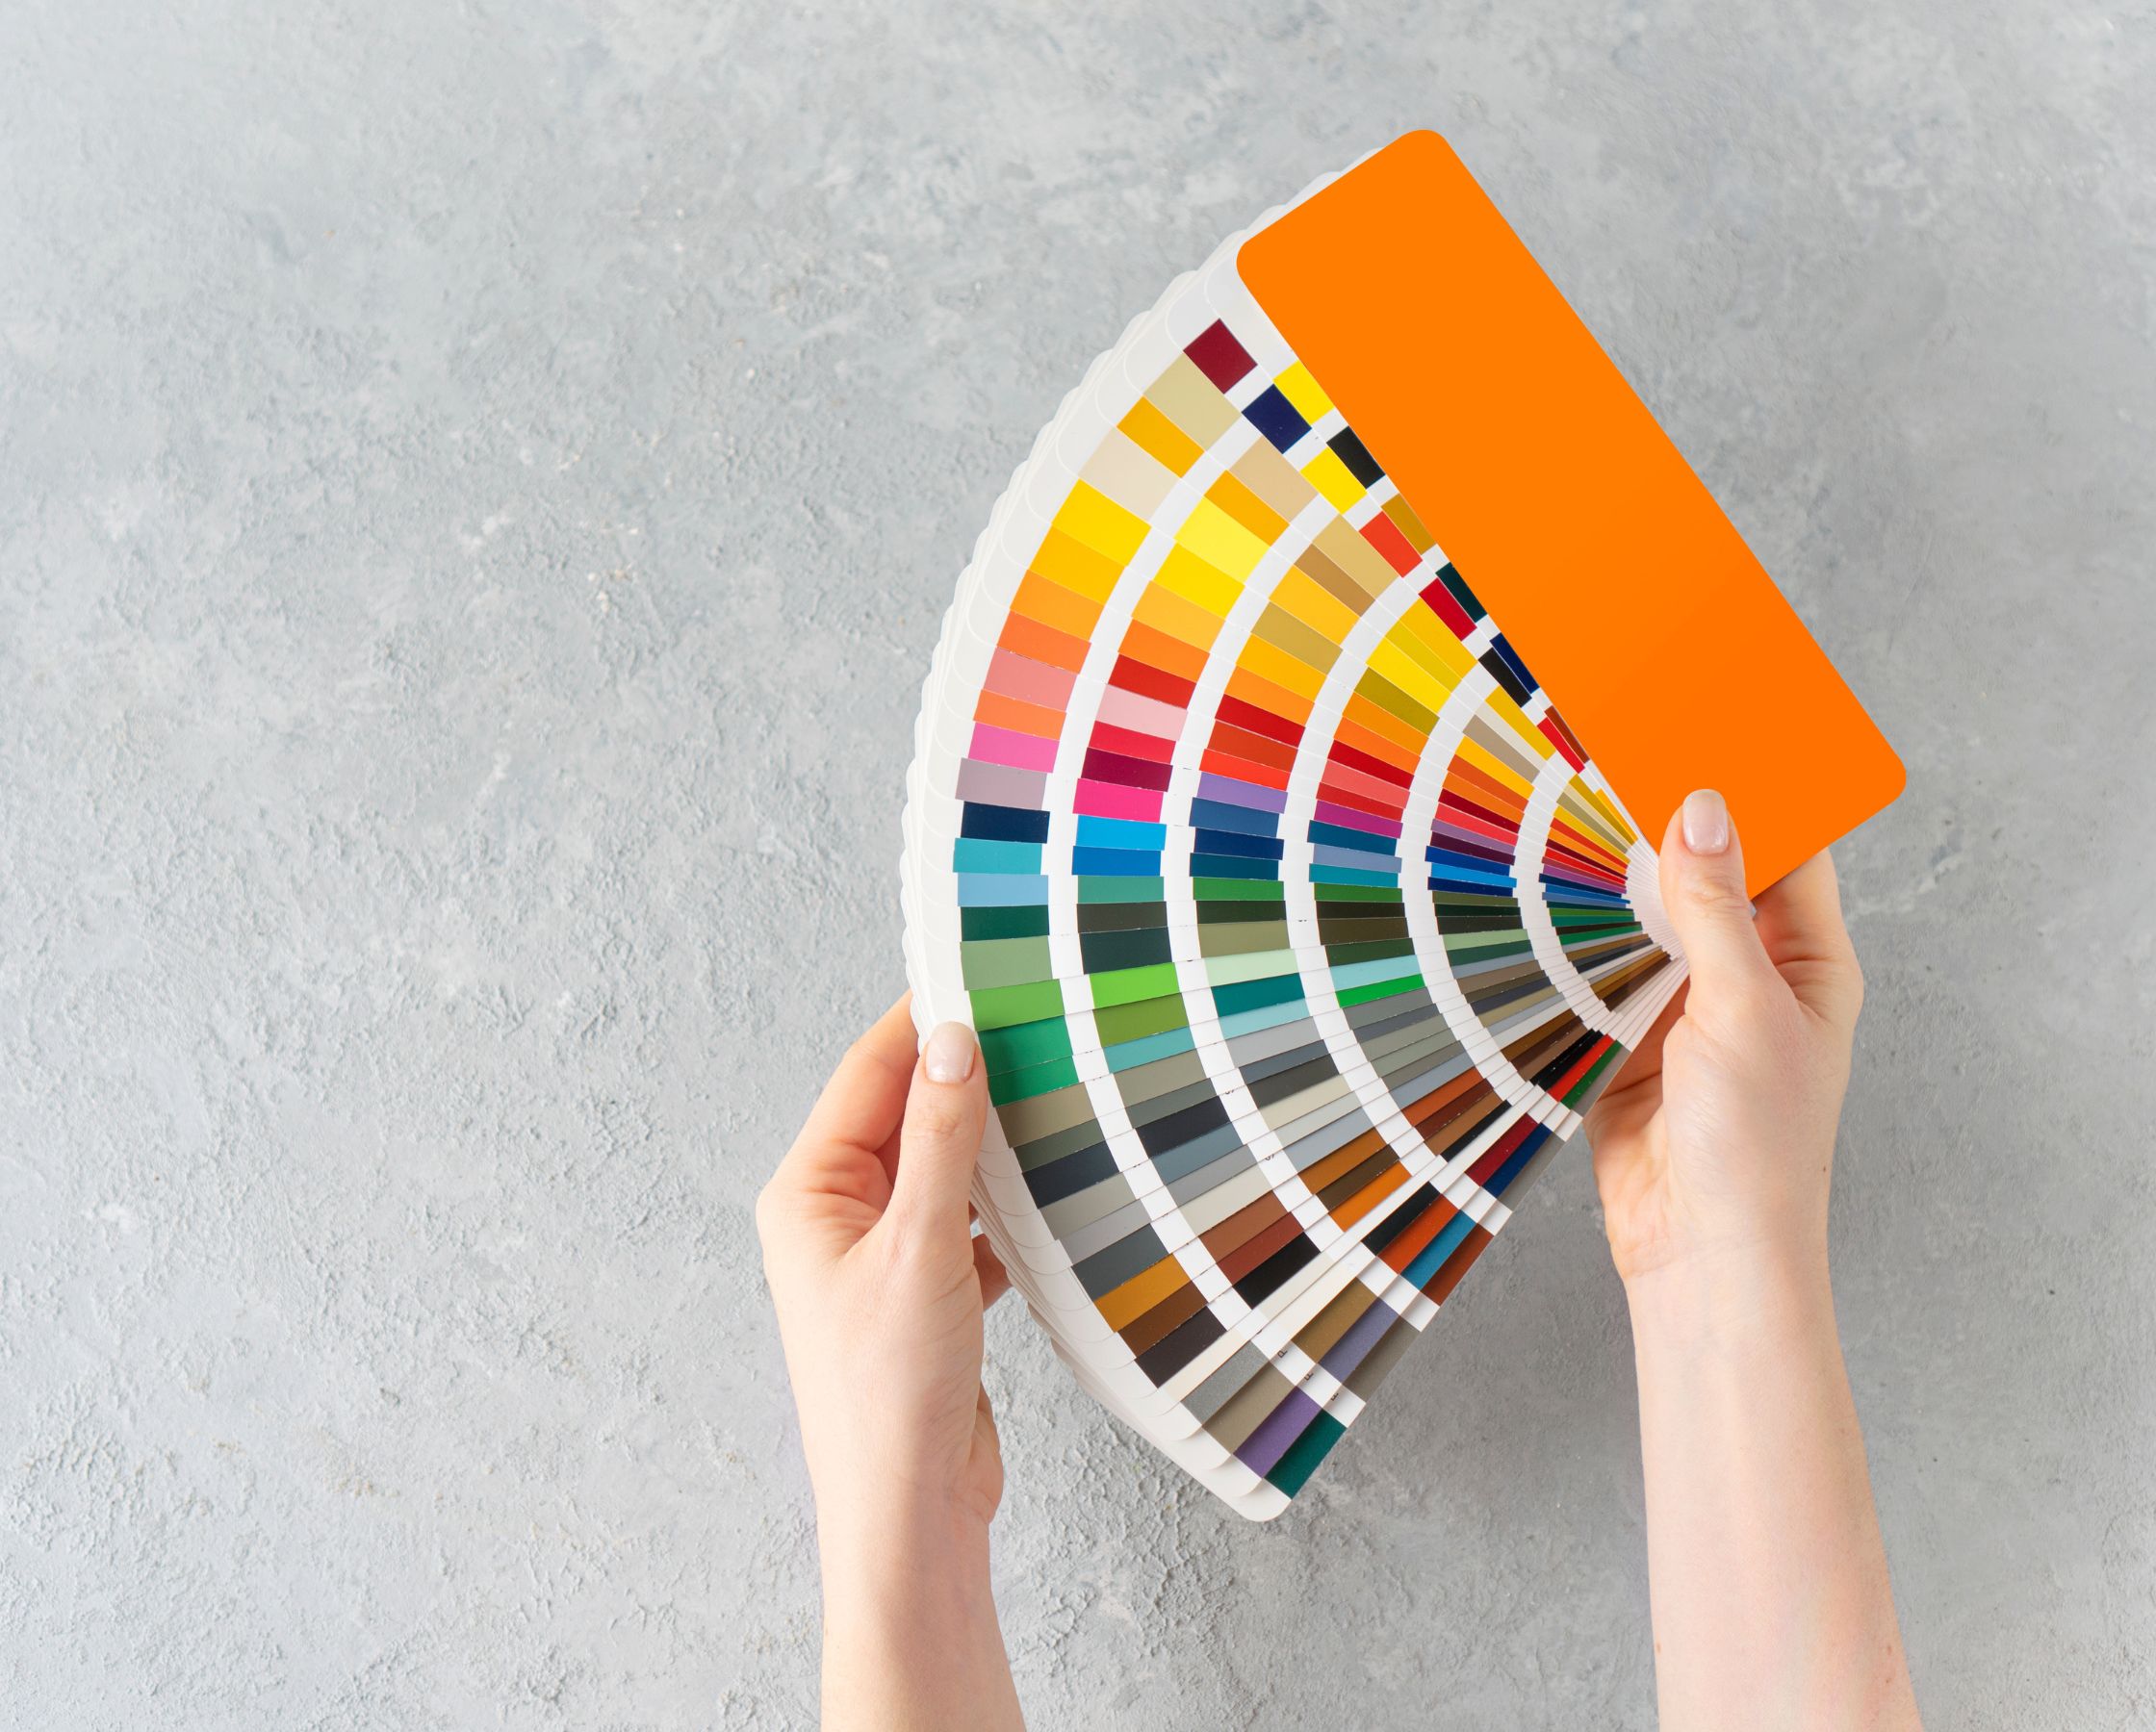 Una foto de dos manos sosteniendo un abanico de muestras de colores de pintura, desplegado para mostrar una amplia gama de colores que incluye tonos de naranja, amarillo, verde, azul, morado, marrón y gris, con un fondo texturizado de concreto gris claro